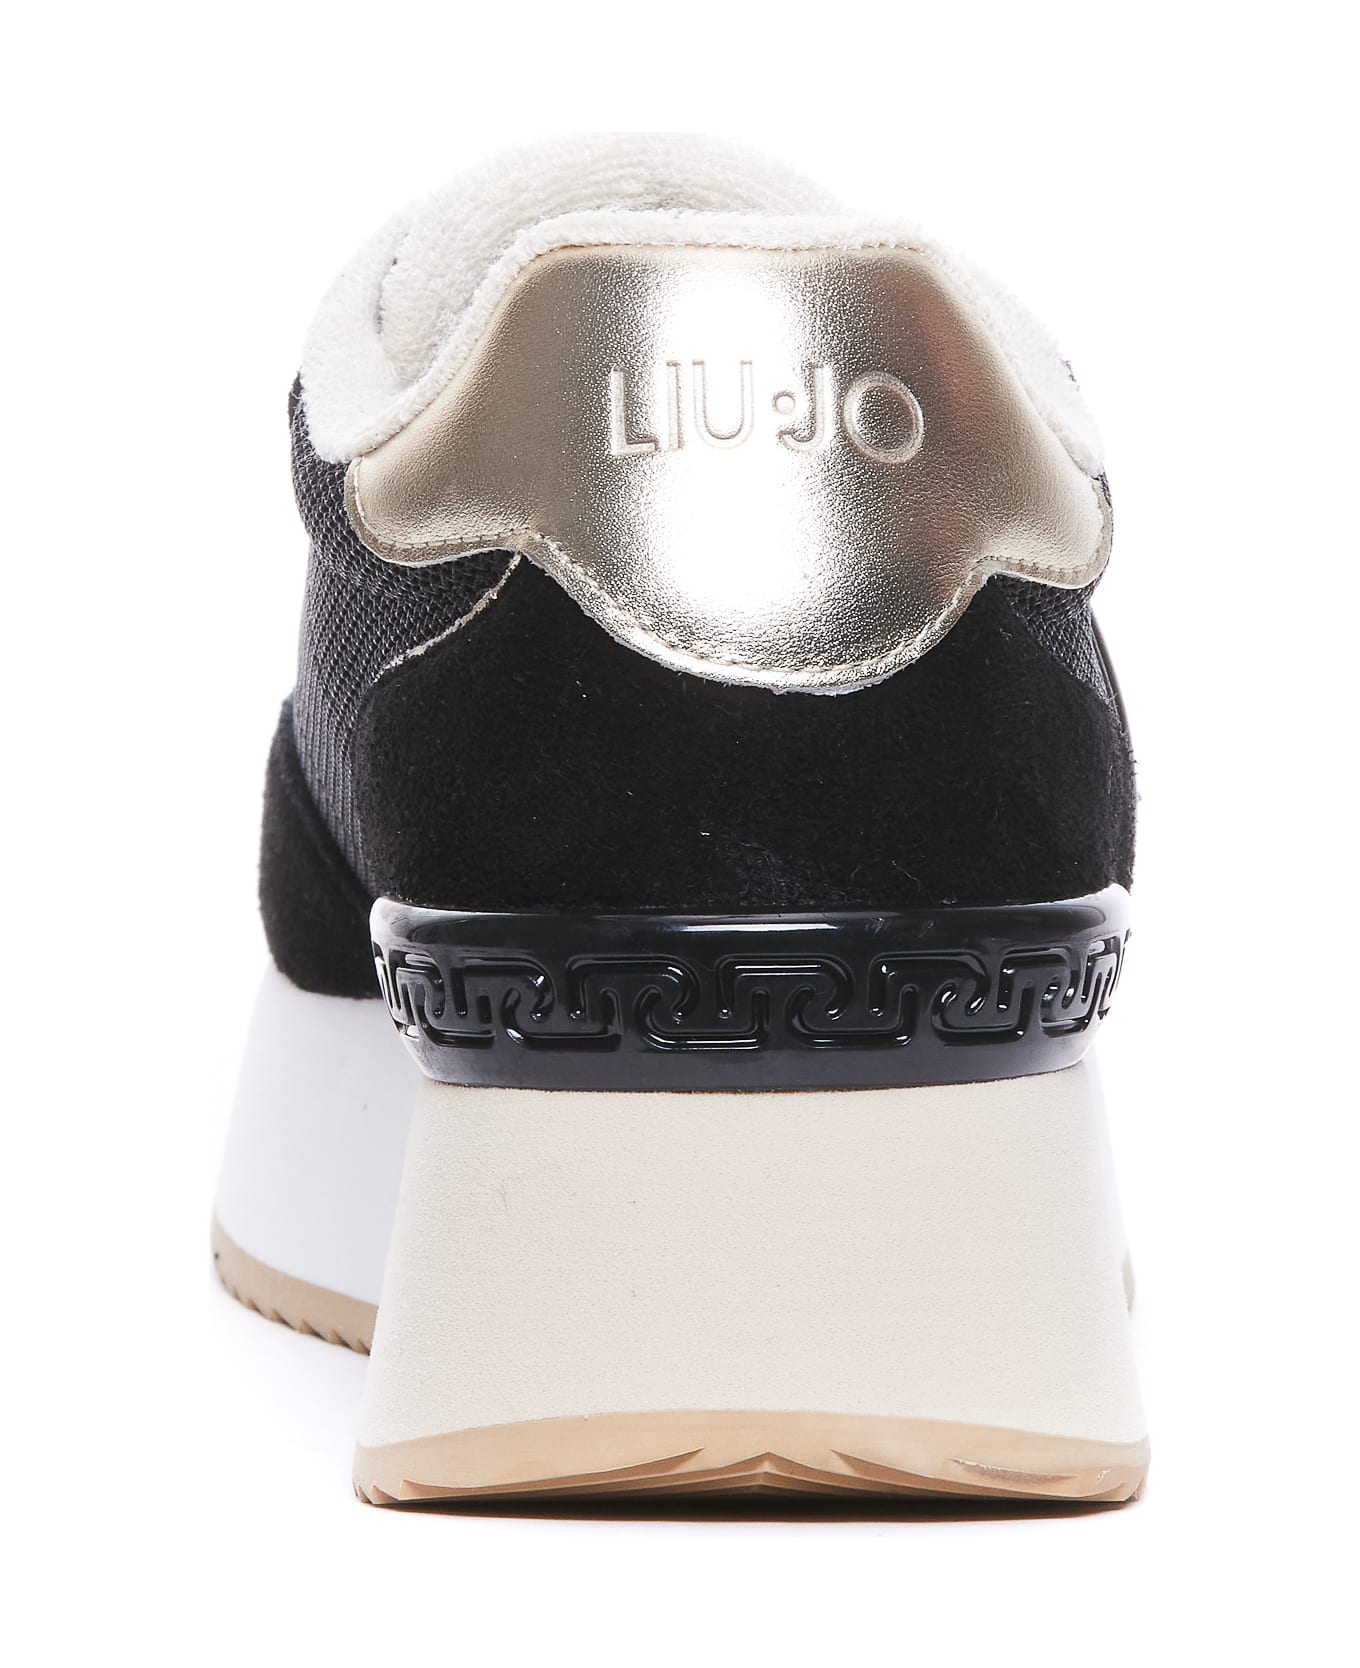 Liu-Jo Dreamy02 Sneakers - Black